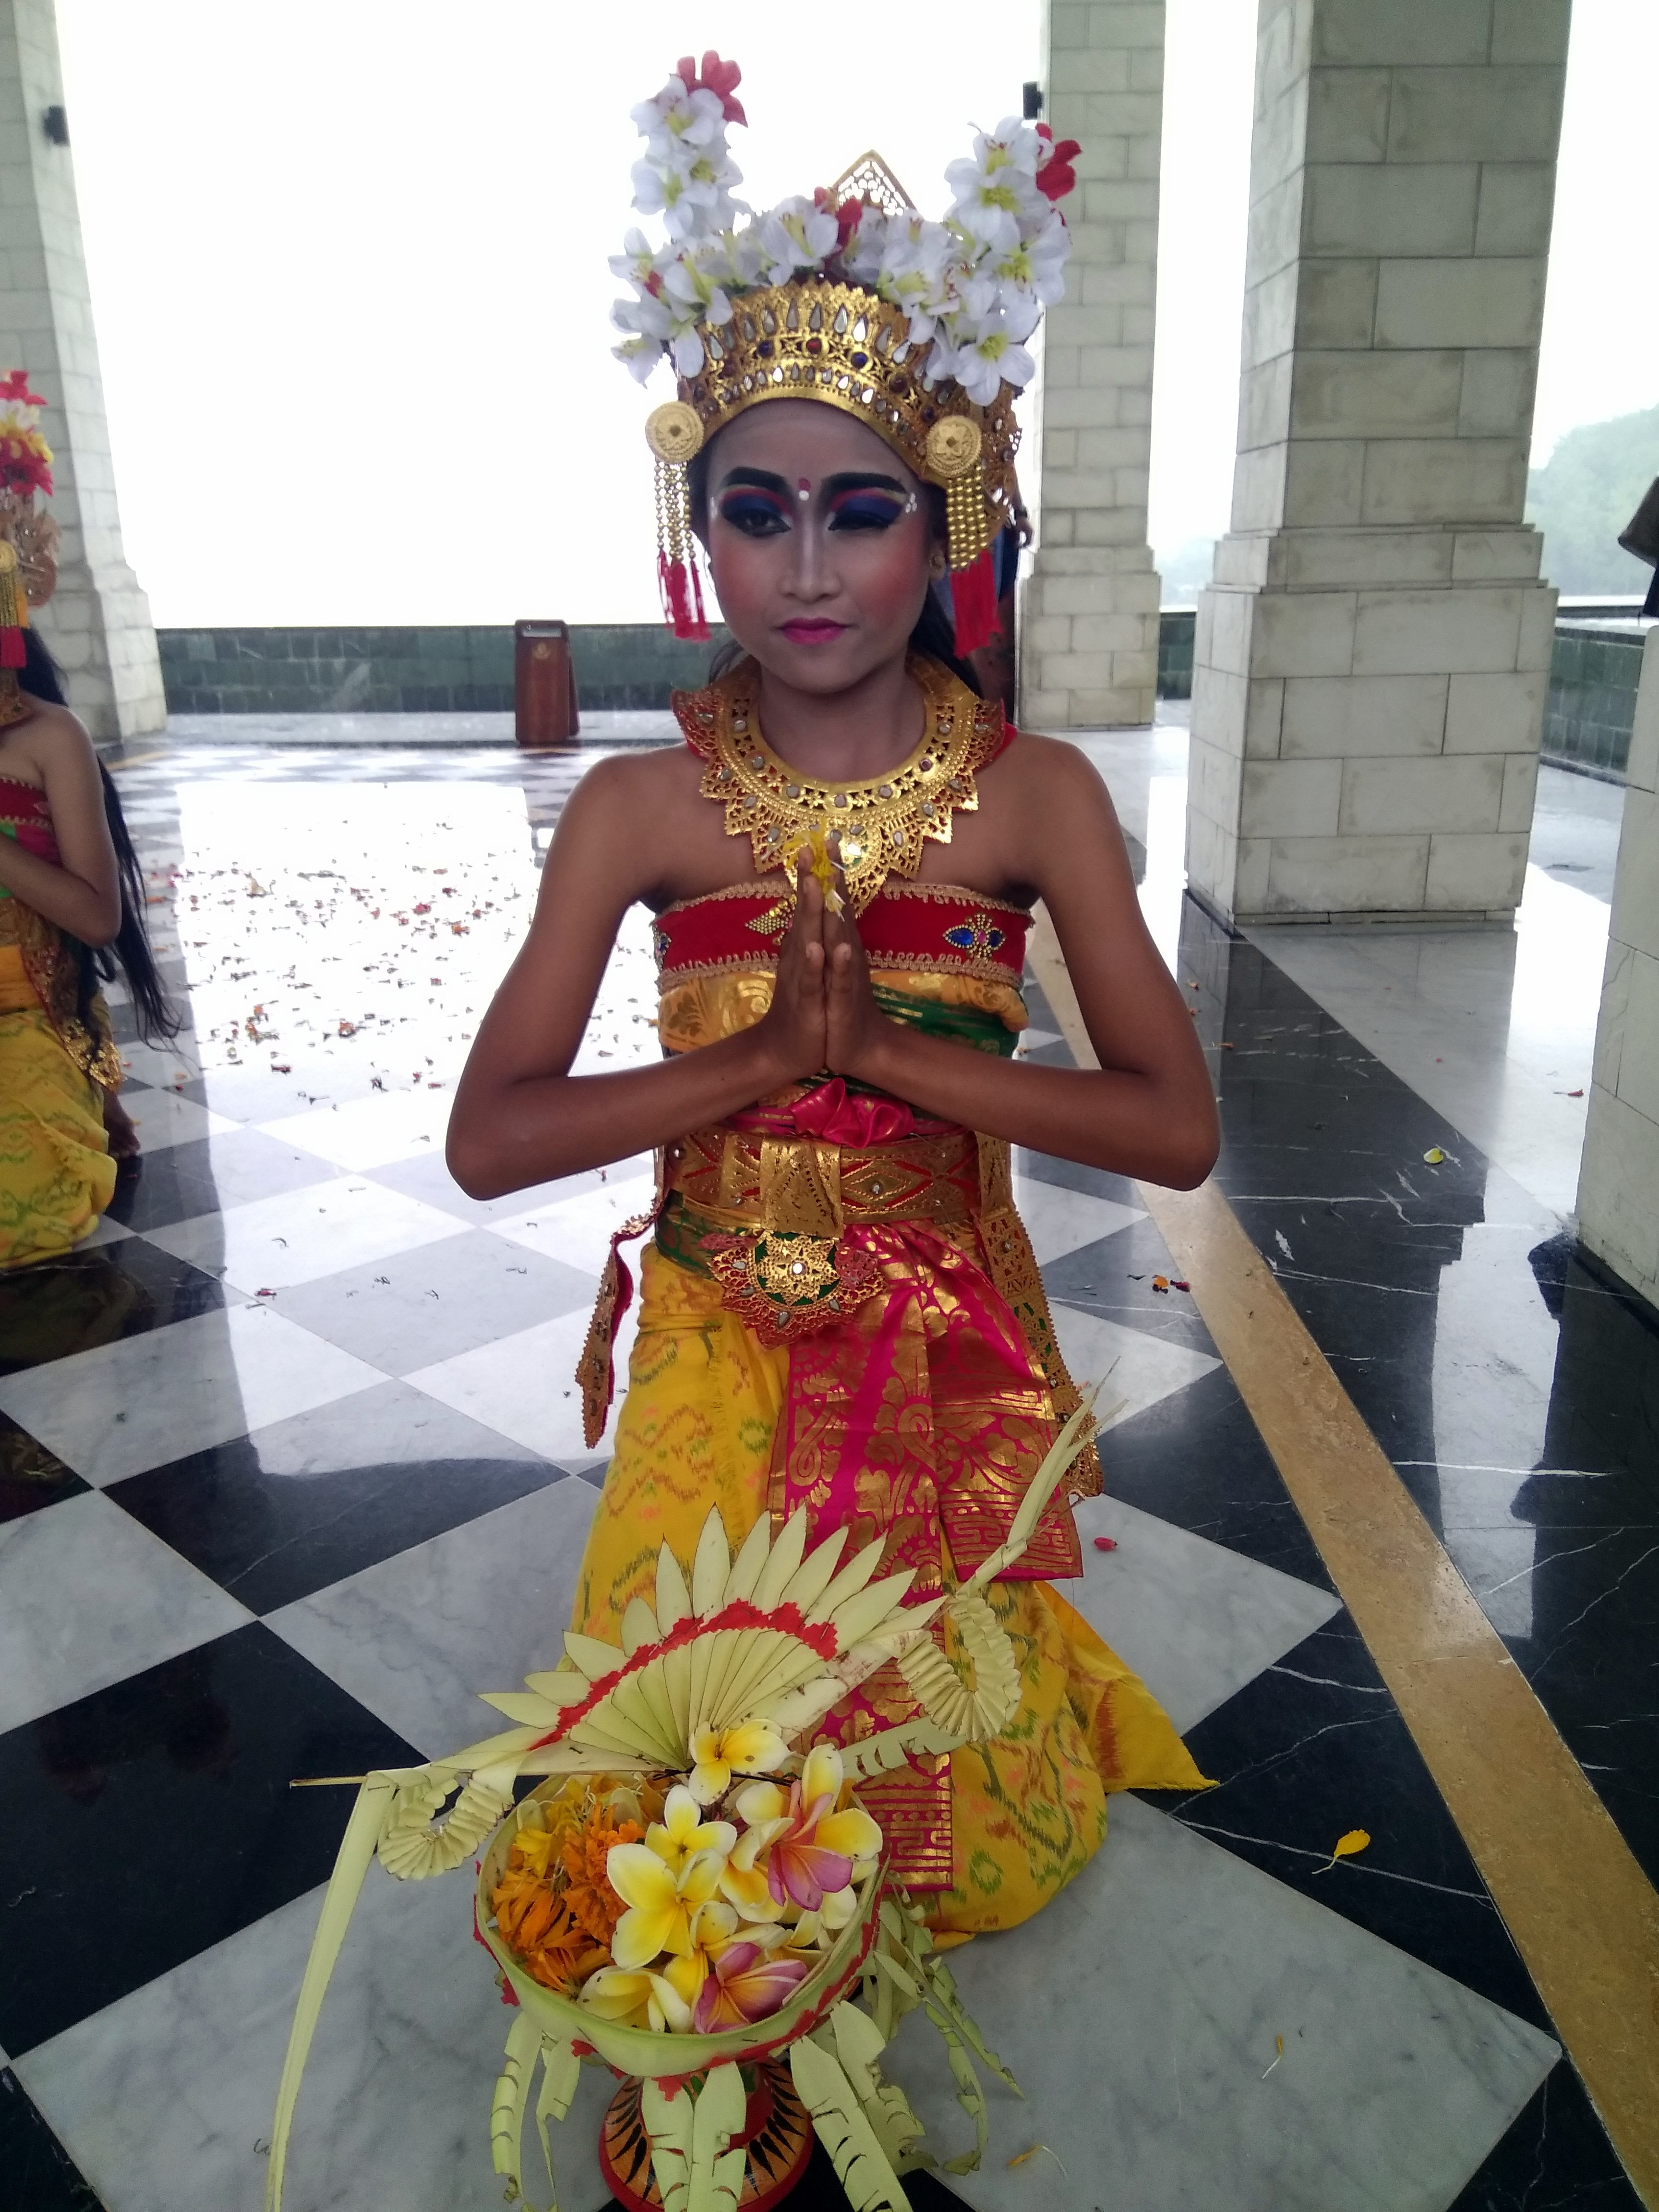 A Balinese dancer